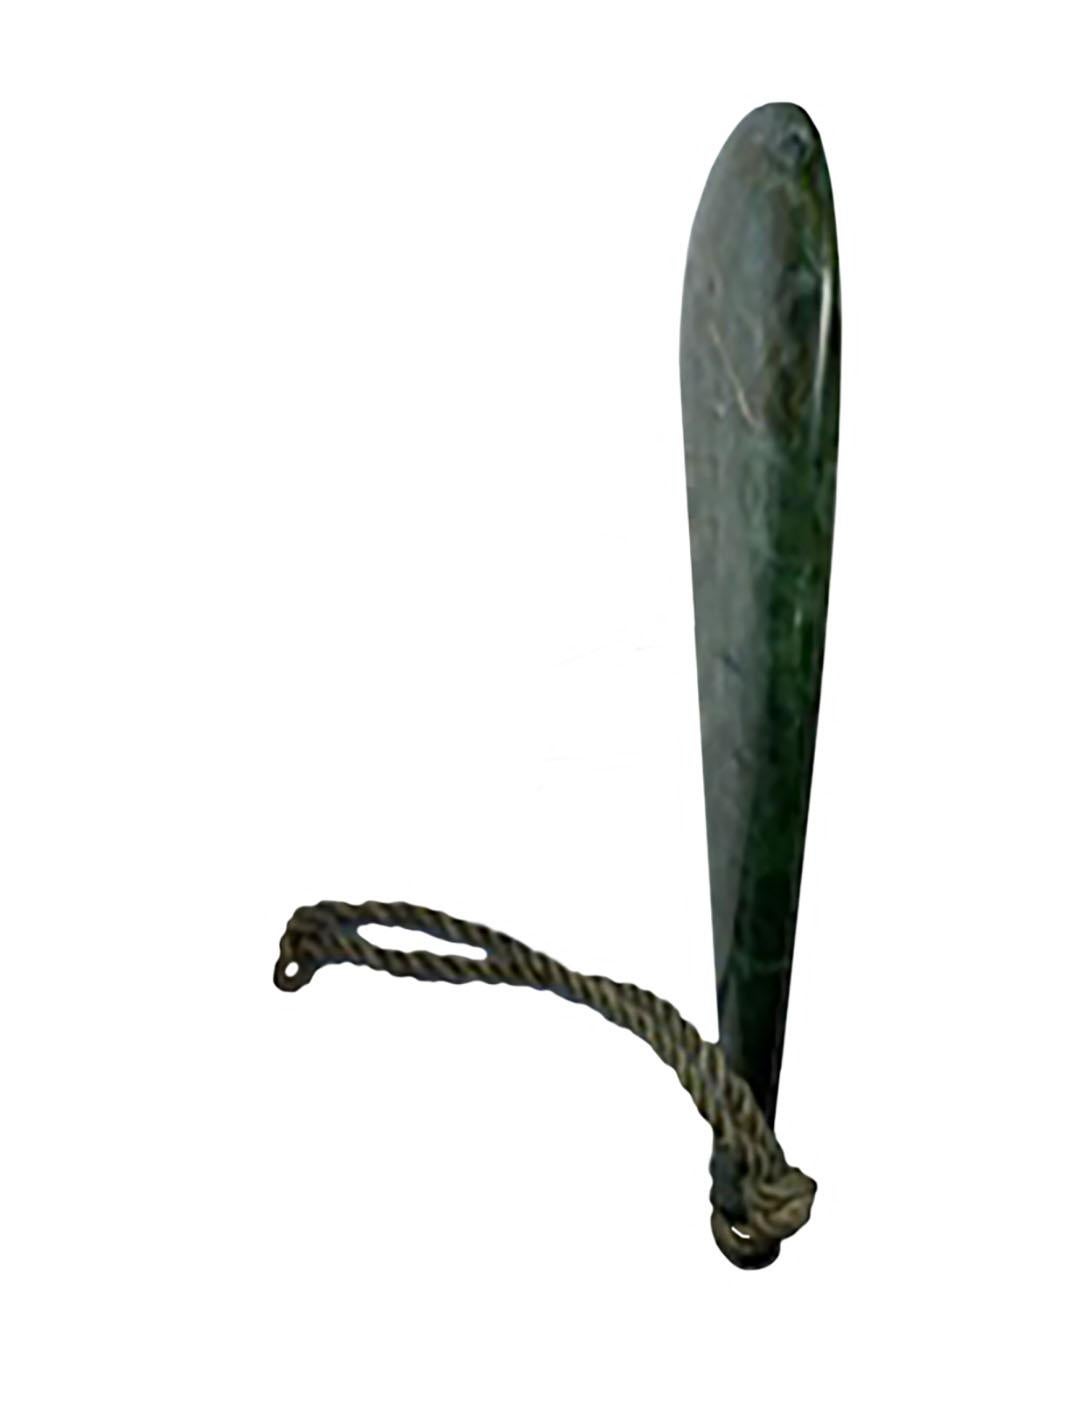 maori weapons